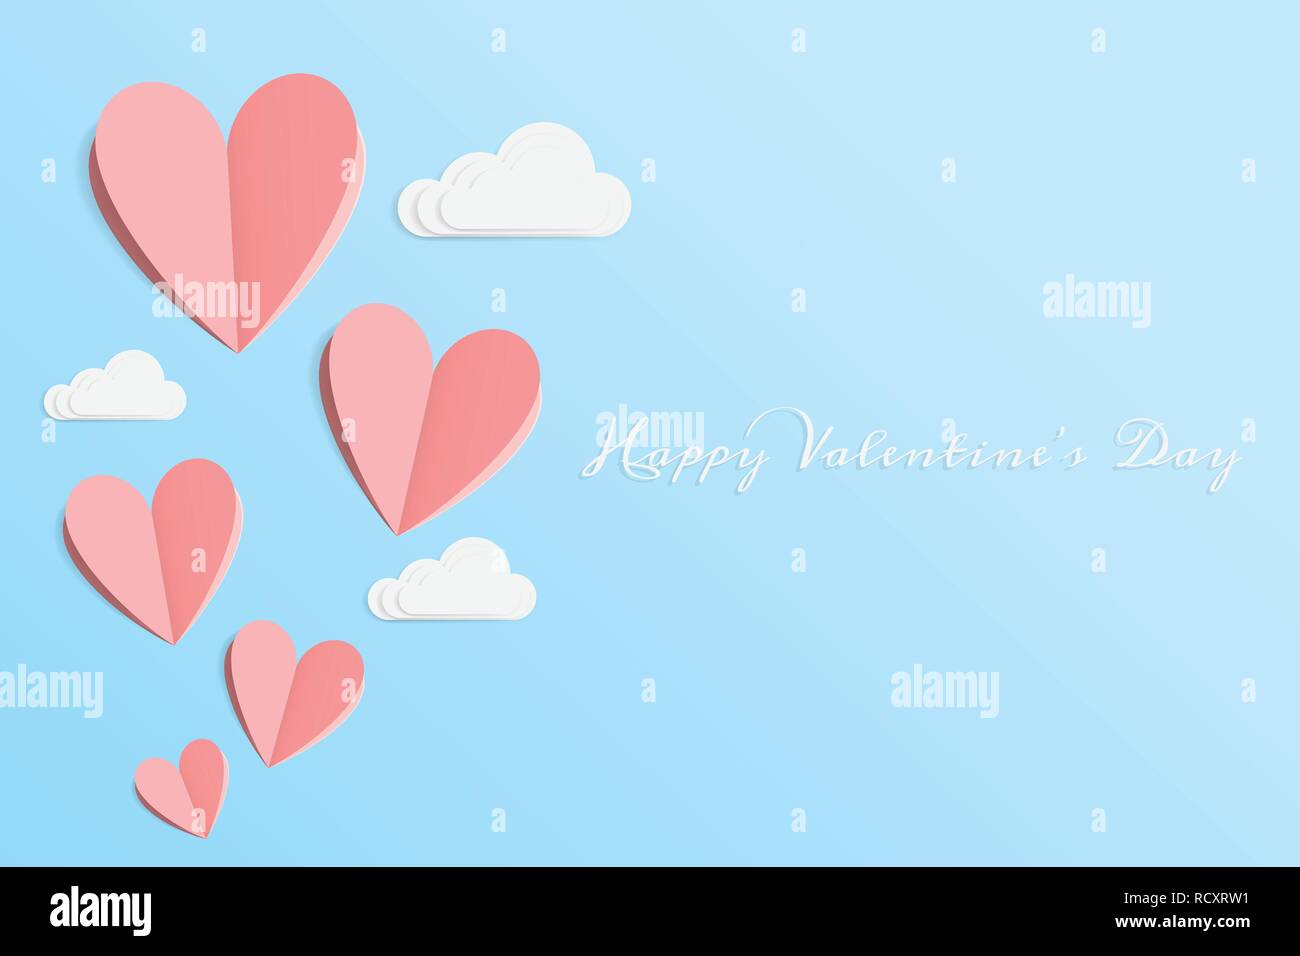 Vecteur de l'amour et Bonne Saint-Valentin. éléments de design d'origami papier coupe coeur rose fait flotter de haut sur le ciel bleu avec des nuages blancs et d'art de papier. Illustration de Vecteur